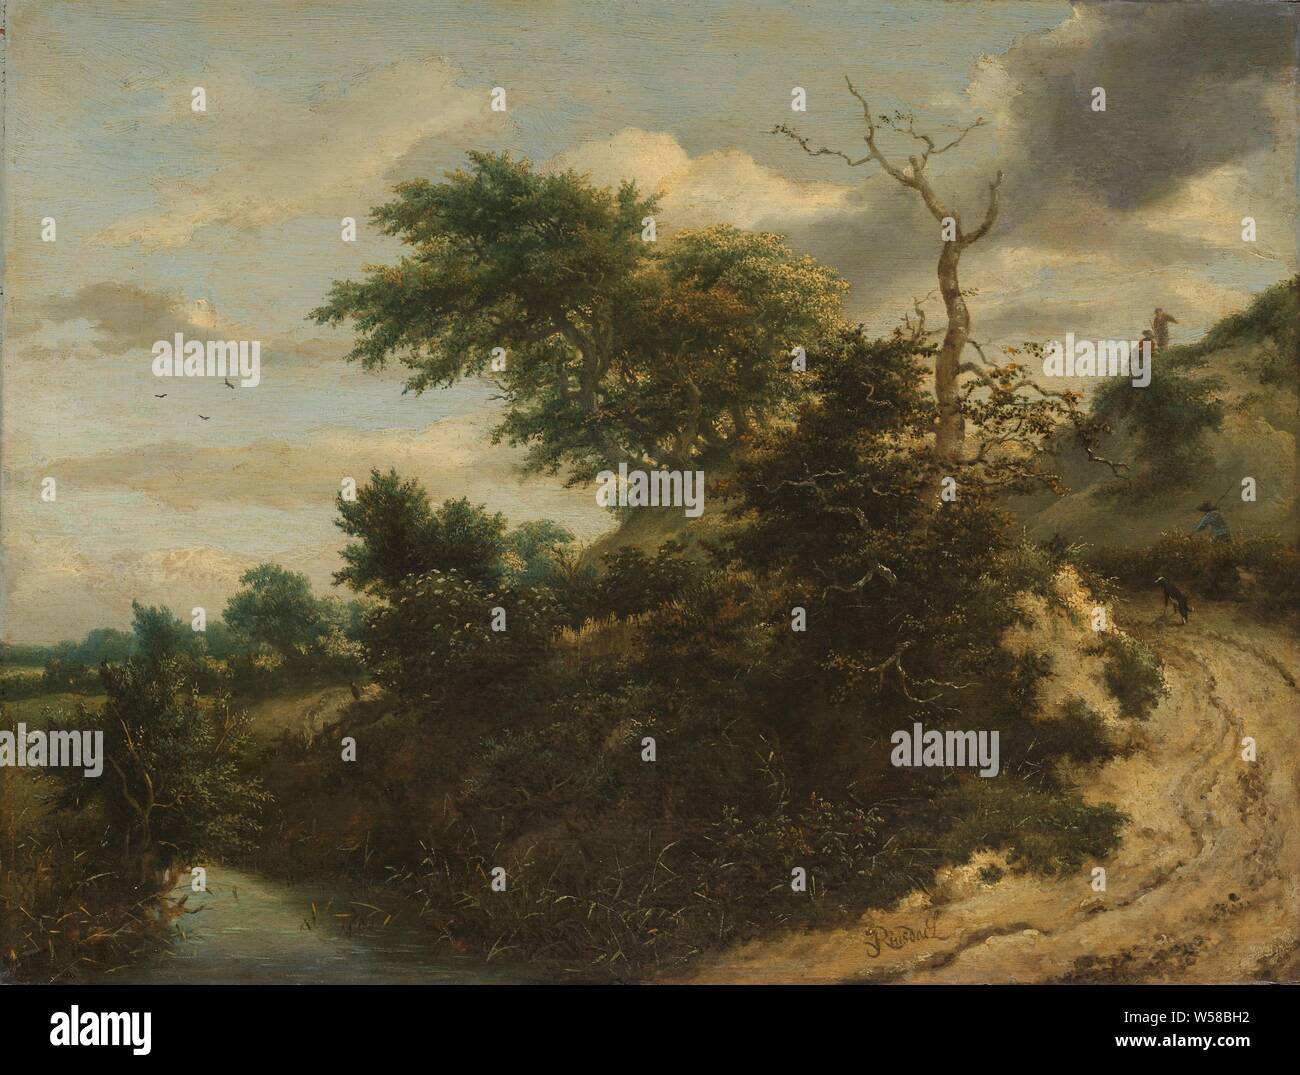 Sandweg in den Dünen, Sand weg in die Dünen, die Dünenlandschaft mit einem Feldweg. Auf der Straße ein Mann mit einem Hund, der sich oben auf der Düne gibt es zwei Männer. Links im Vordergrund Wasser mit Schilf., Jacob Isaacksz. van Ruisdael, C. 1650 - C. 1655, Panel, Ölfarbe (Lack), h 32 cm x W 42,5 cm h 44,5 cm x W 54,5 cm x t 7 cm Stockfoto